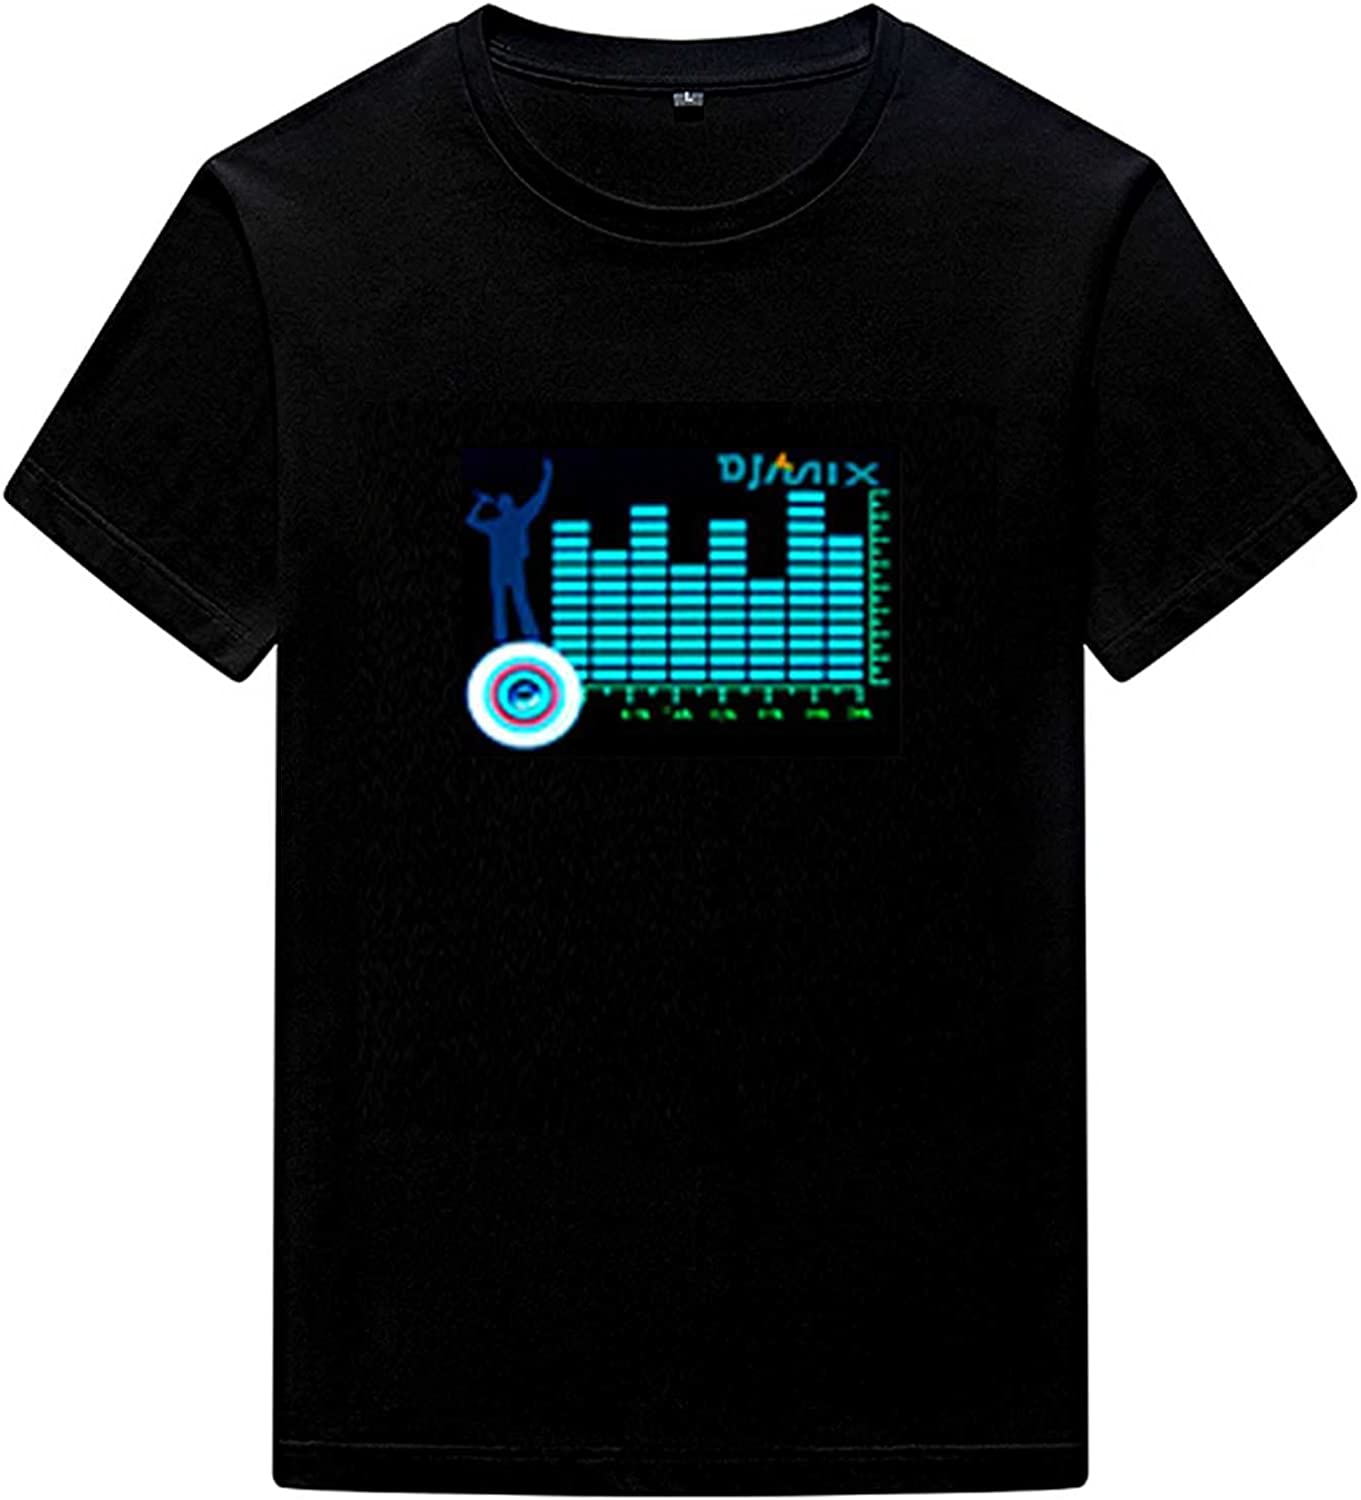 LED Sound Activated T-Shirt Equalizer Novelty Clothing